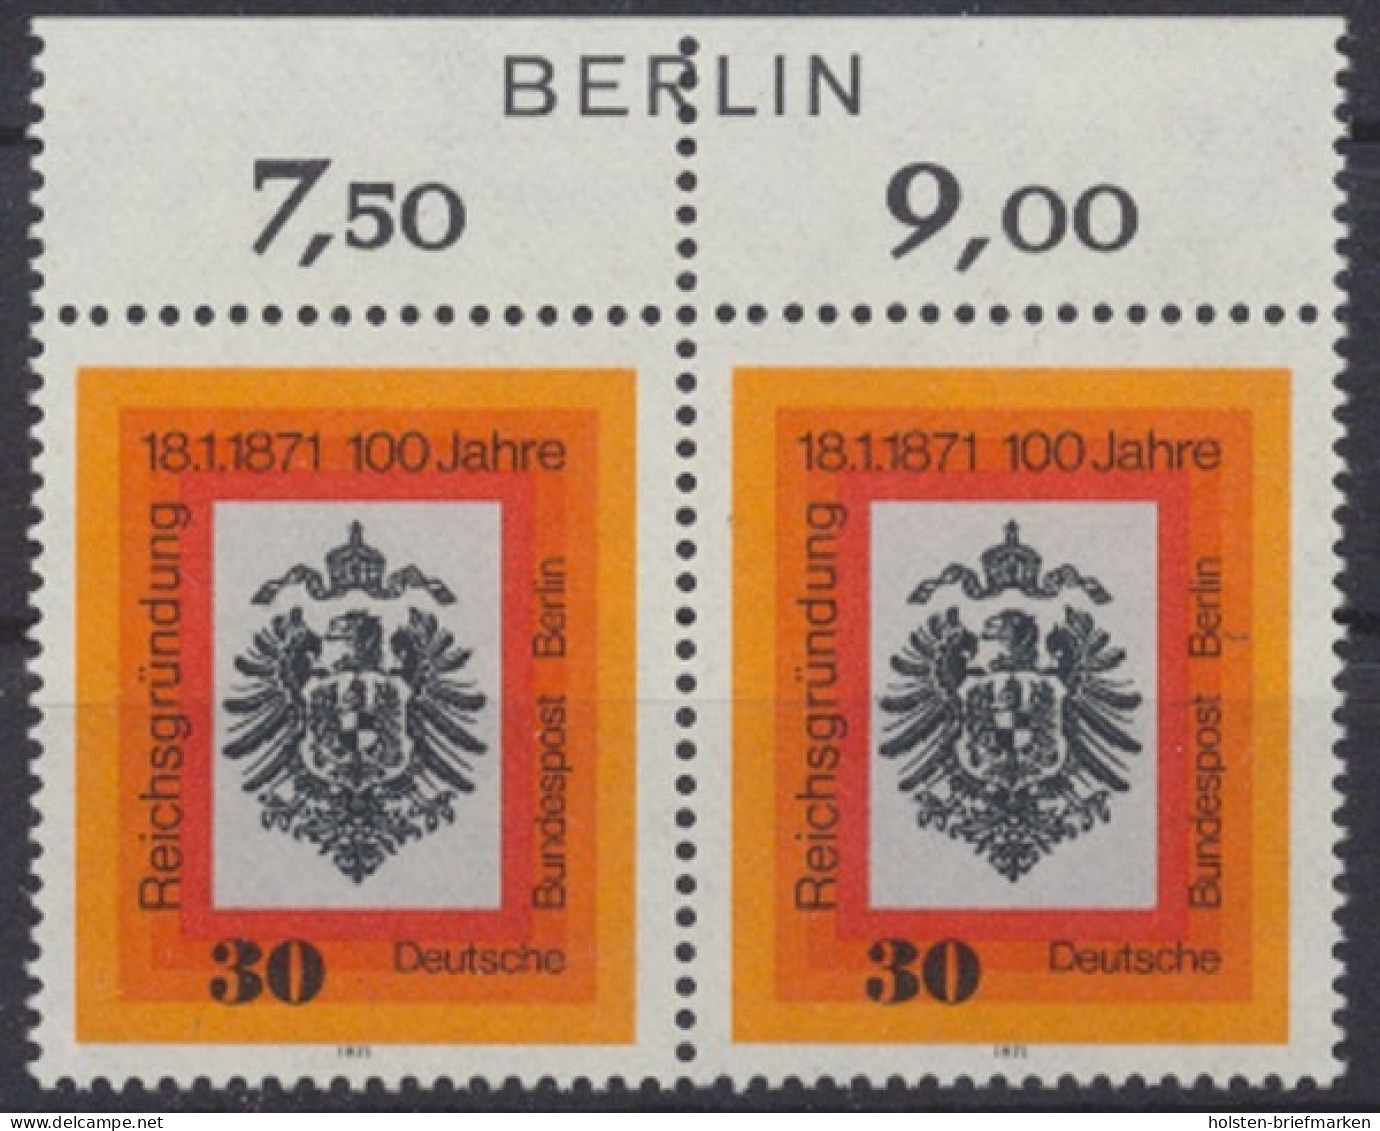 Berlin, MiNr. 385 Paar, Oberrand Mit Berlin-Zudruck, Postfrisch - Unused Stamps